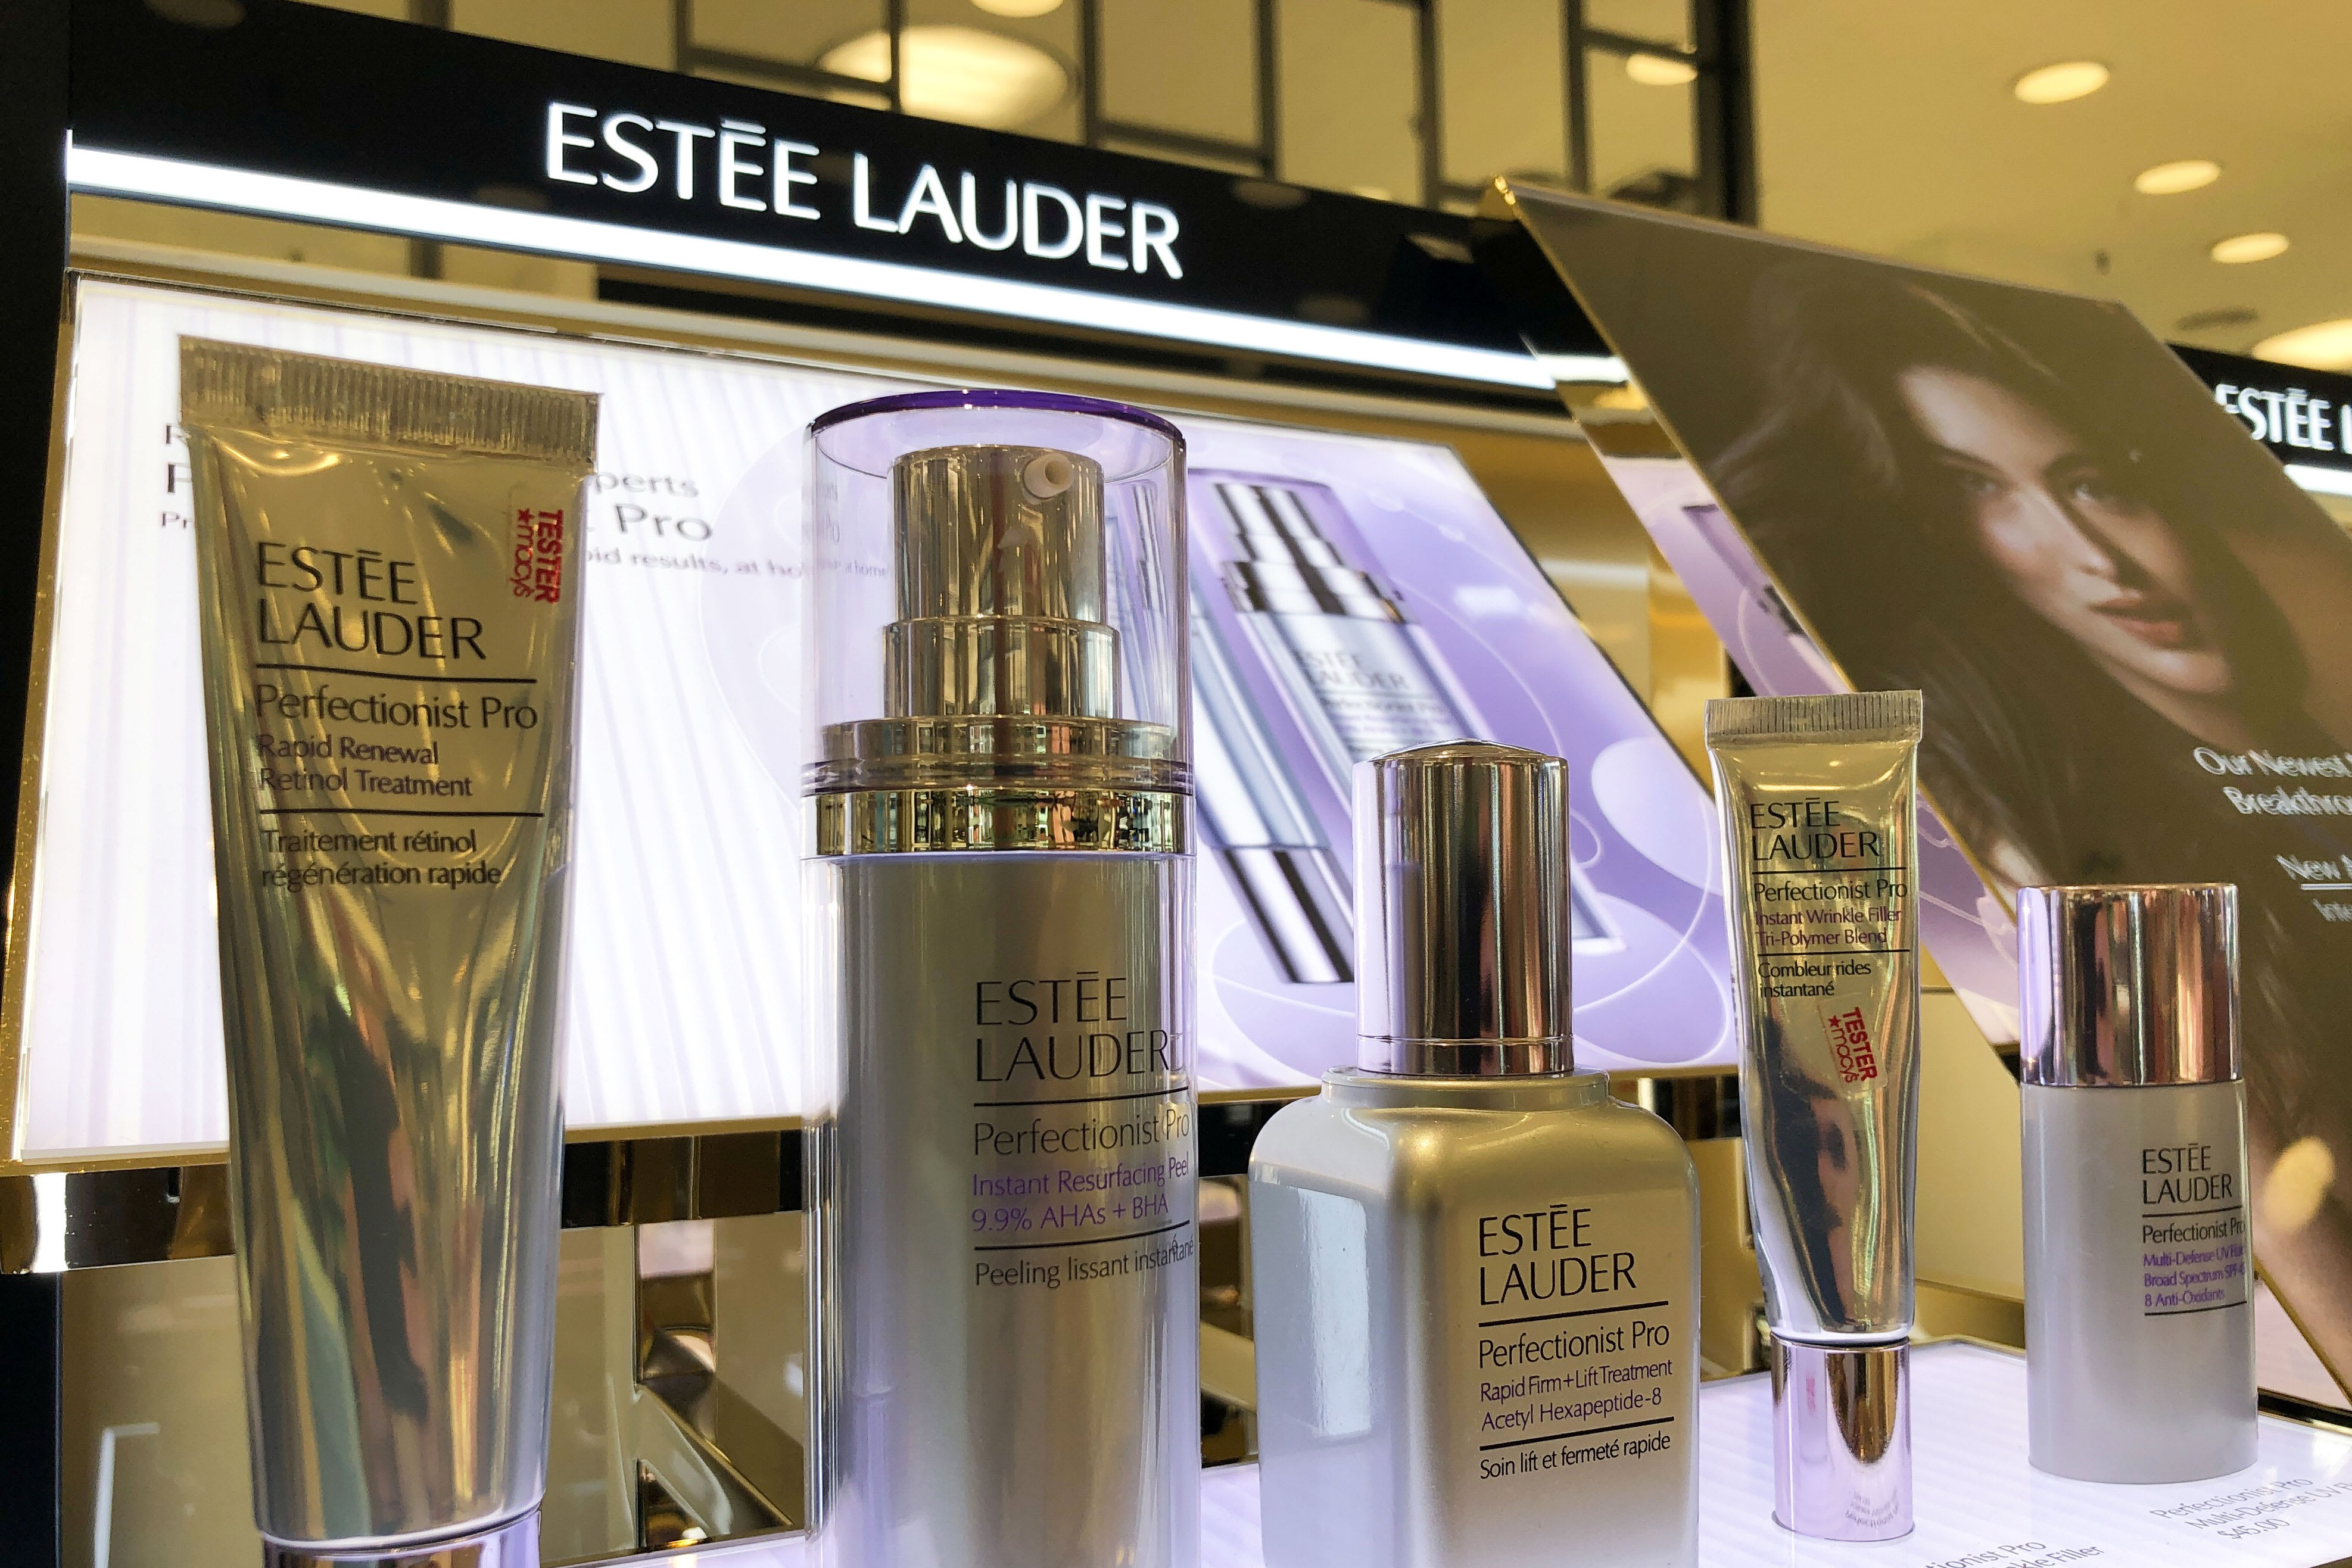 Estee Lauder cuts profit forecast, blames Hong Kong and China